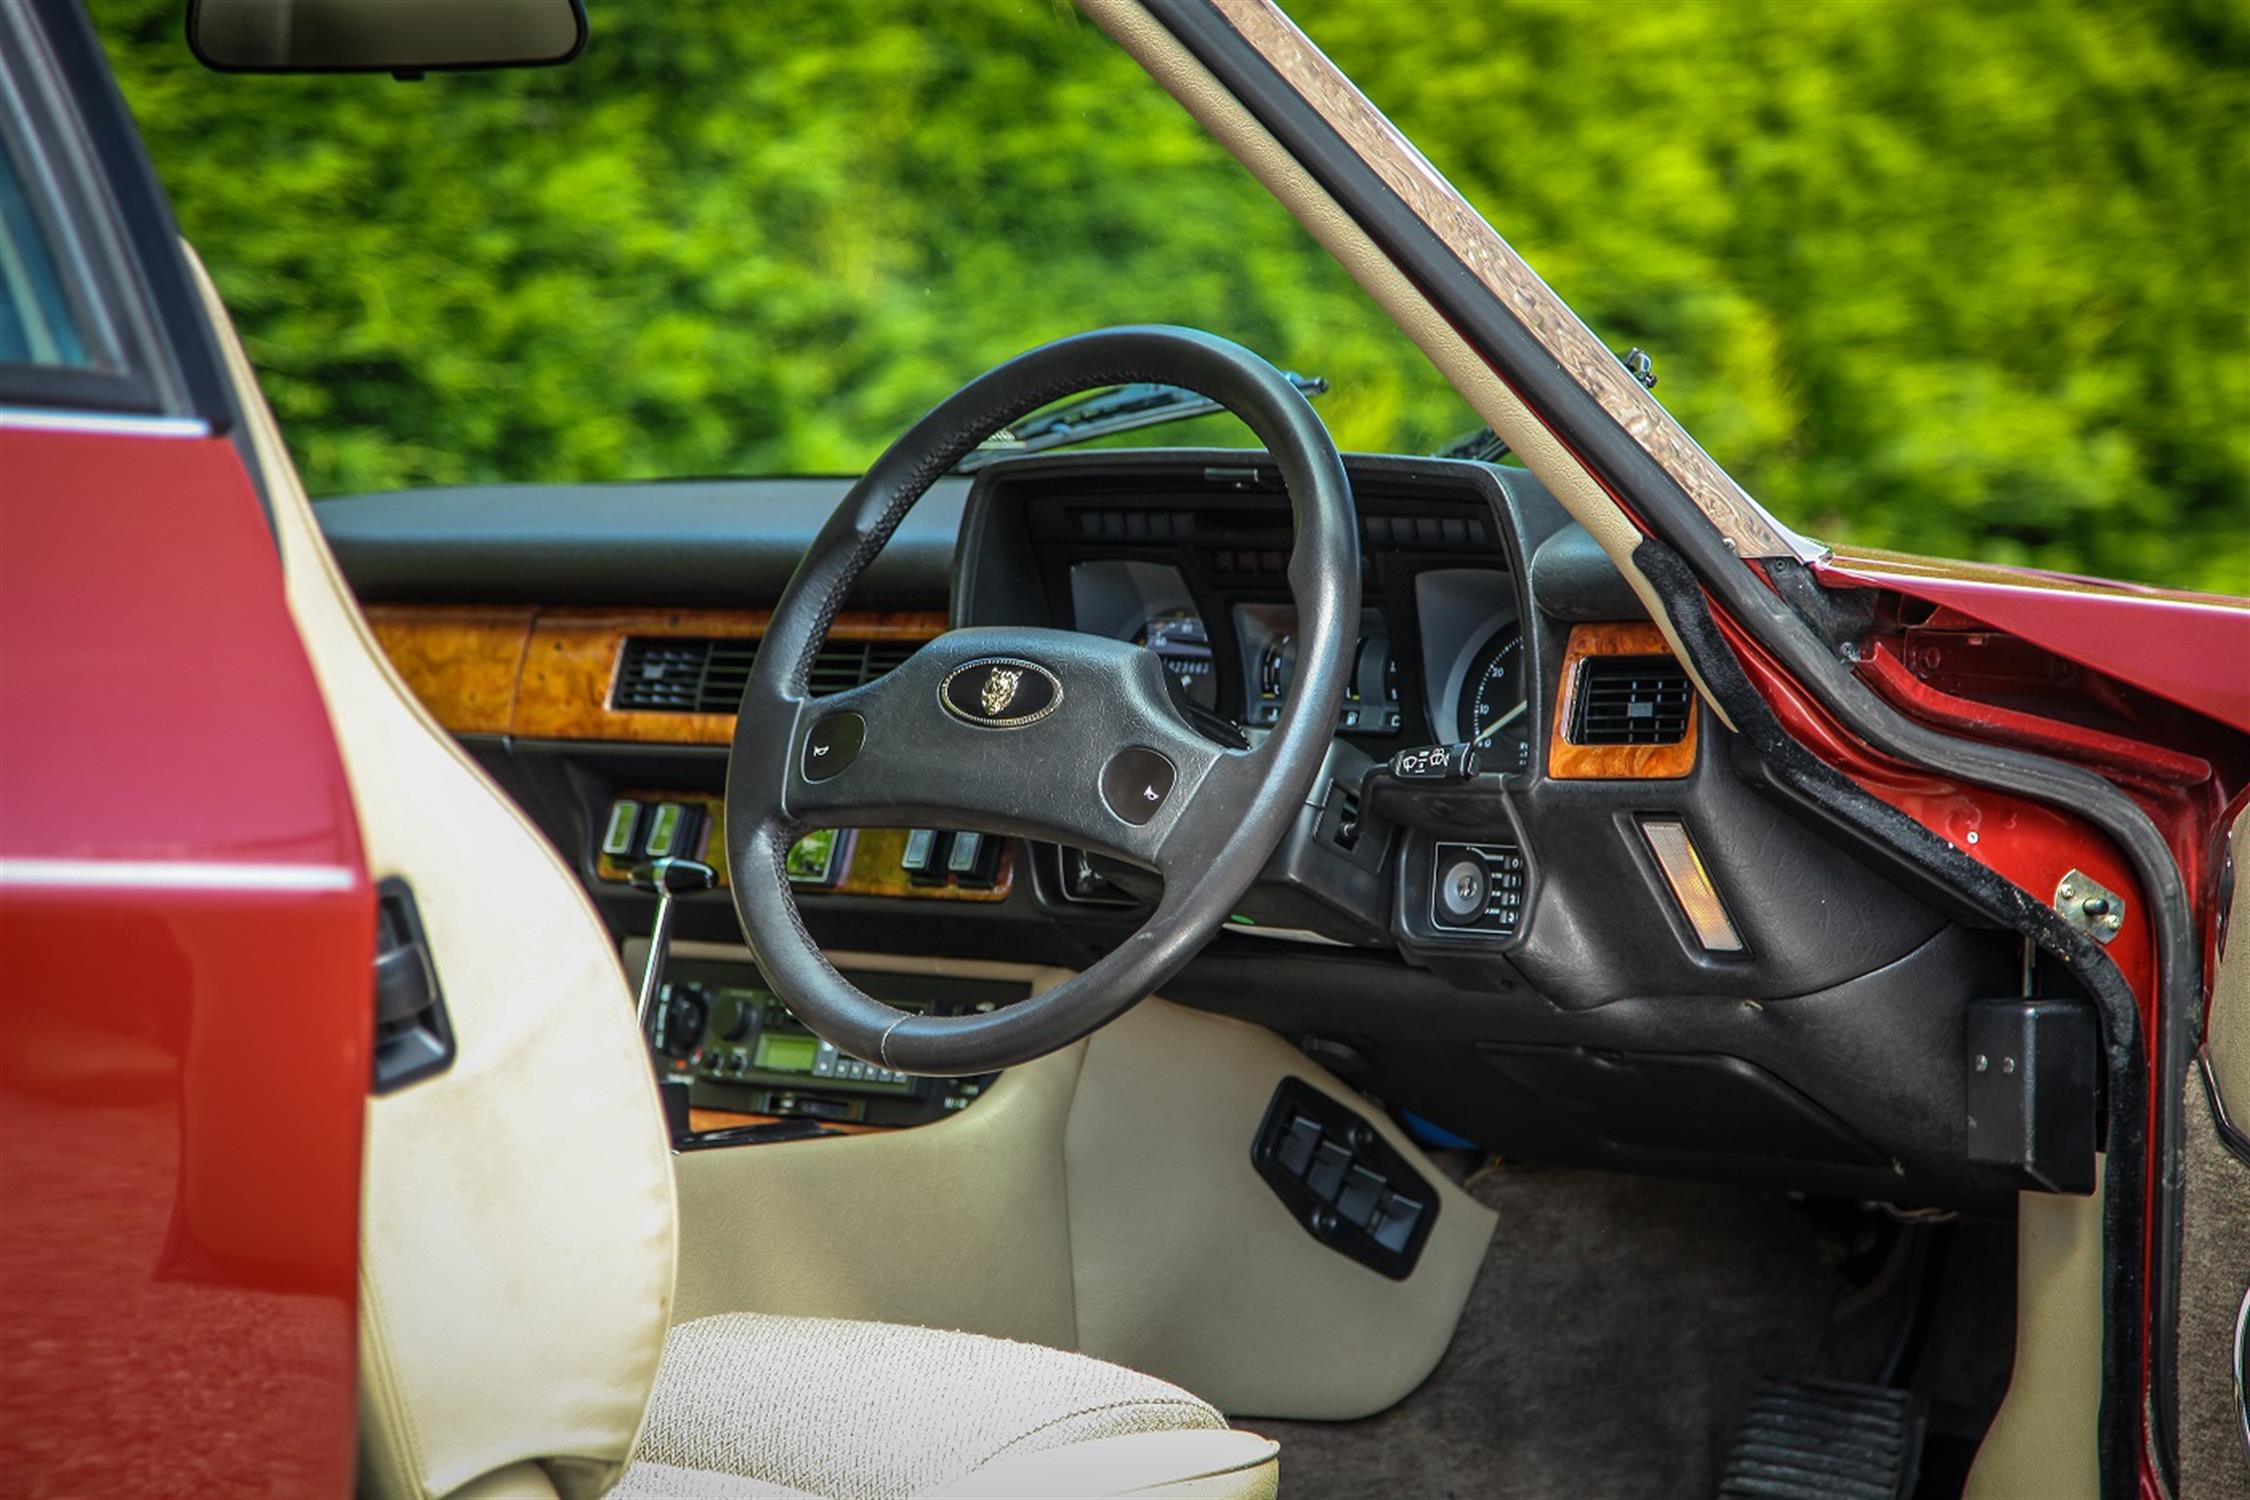 1987 Jaguar XJ-S 3.6 Automatic - Image 10 of 16